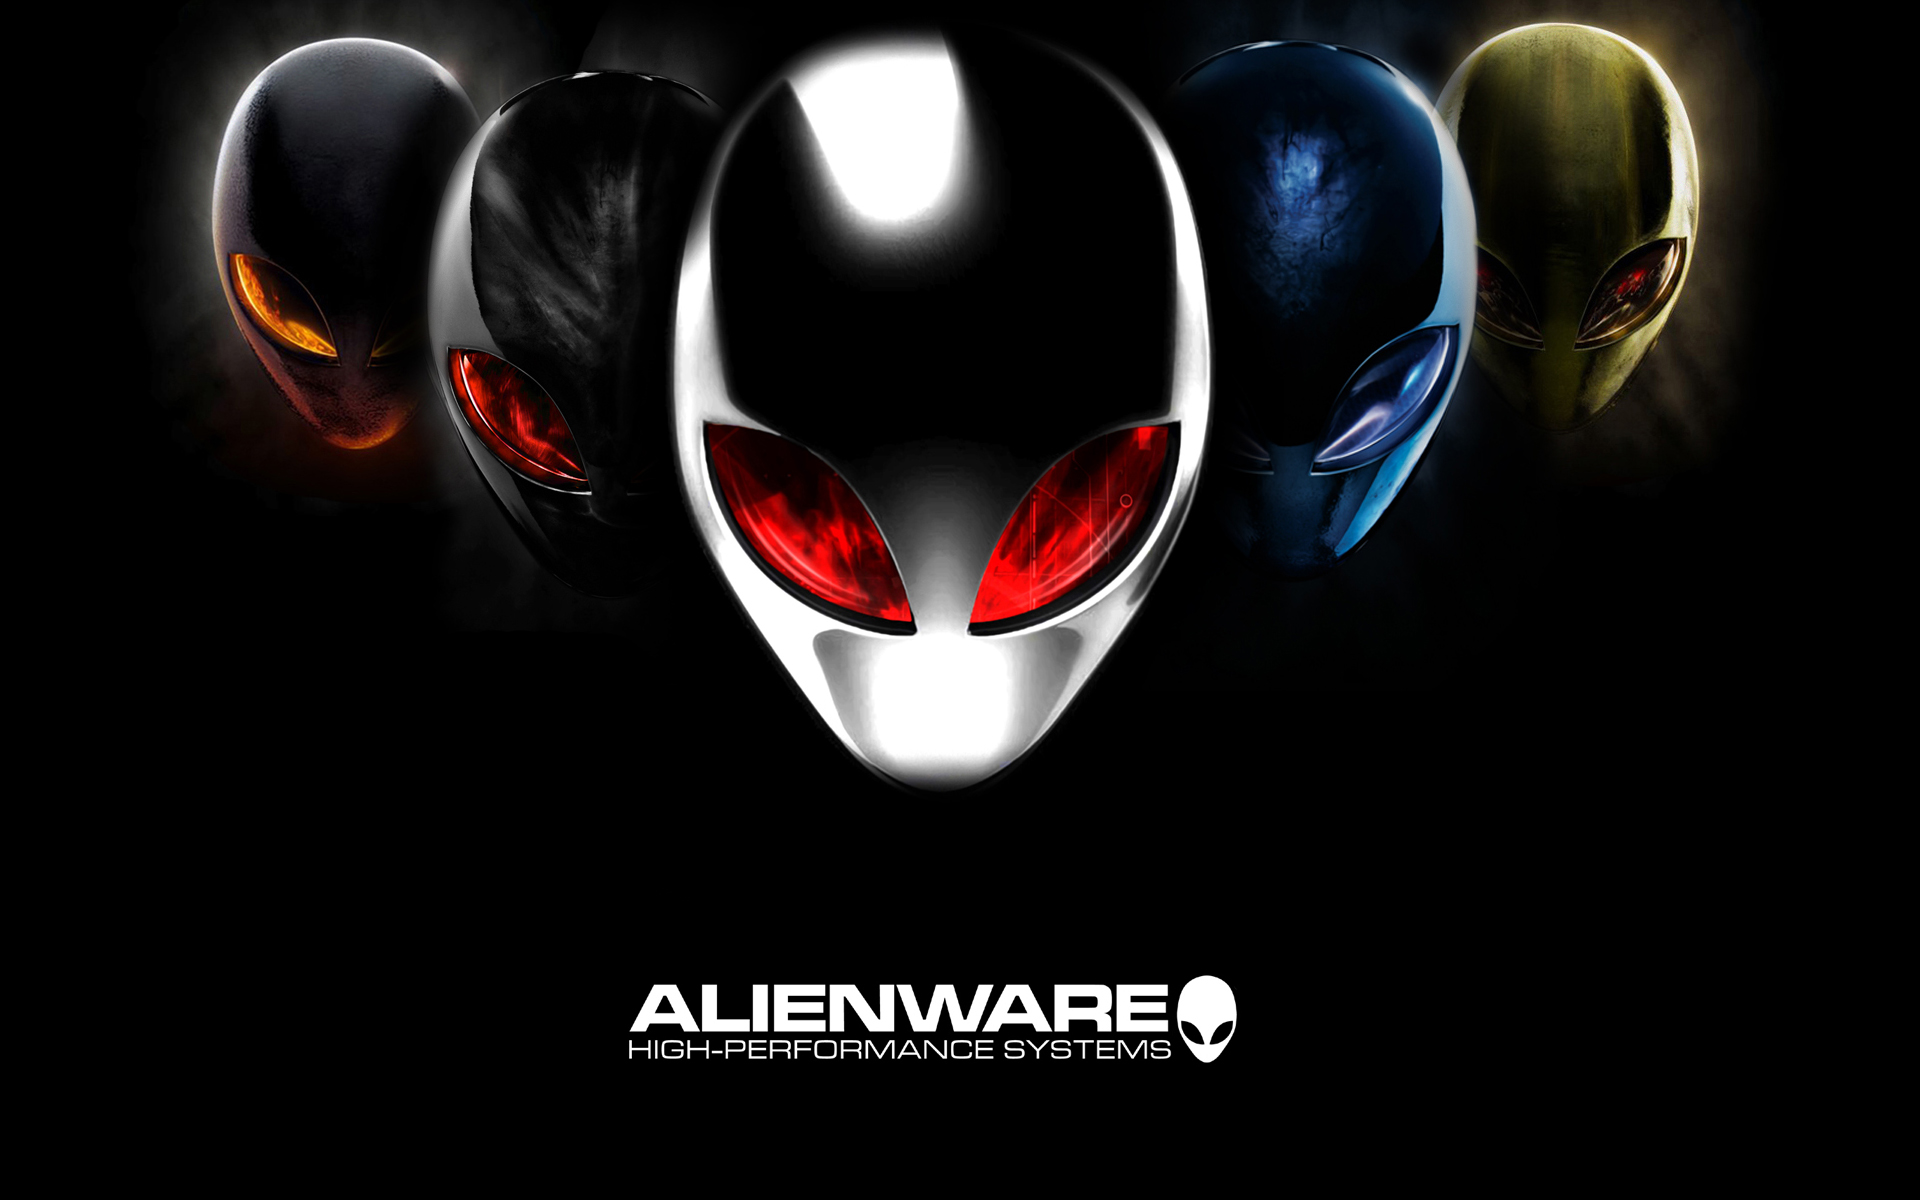 HD Alienware Wallpapers 1920x1080 & Alienware Backgrounds for